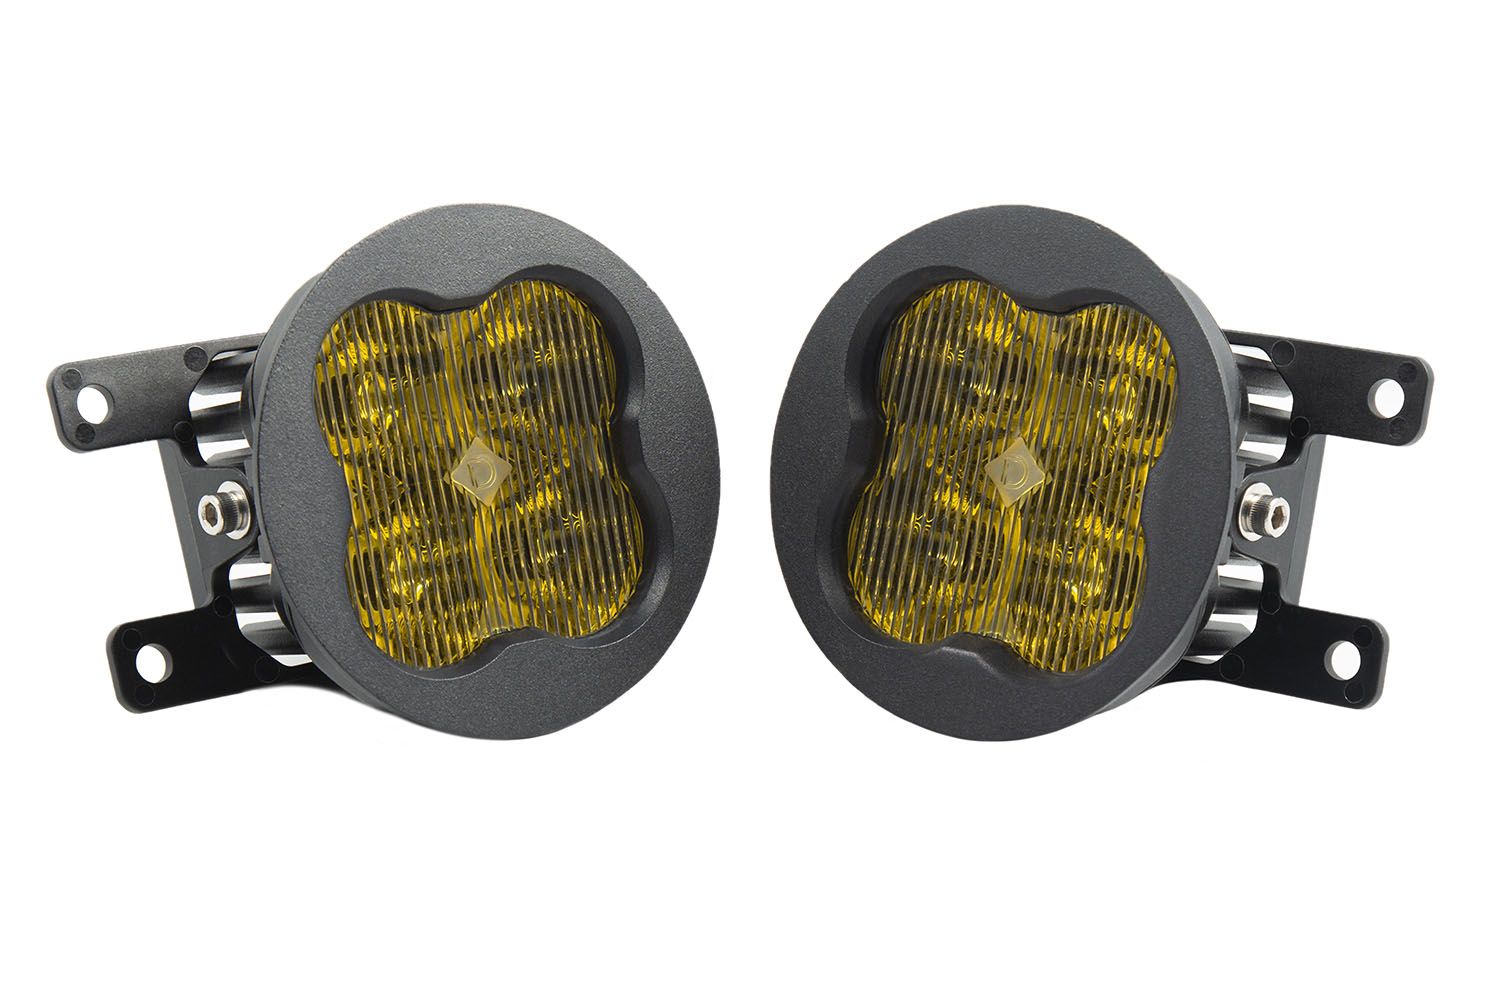 SS3 LED Fog Light Kit For 2013-2016 Scion FR-S